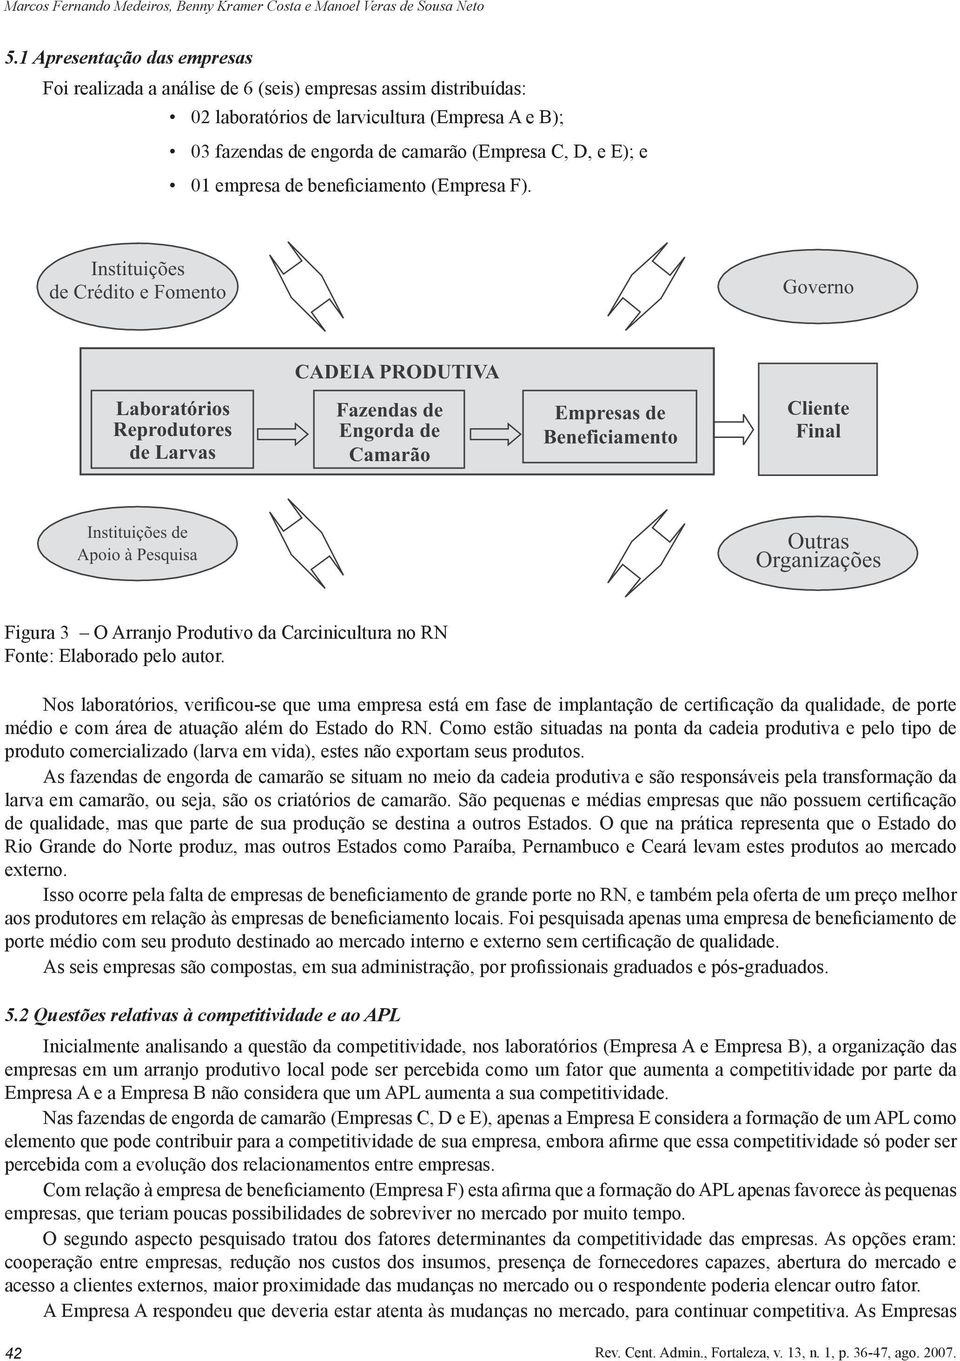 01 empresa de beneficiamento (Empresa F). Figura 3 O Arranjo Produtivo da Carcinicultura no RN Fonte: Elaborado pelo autor.